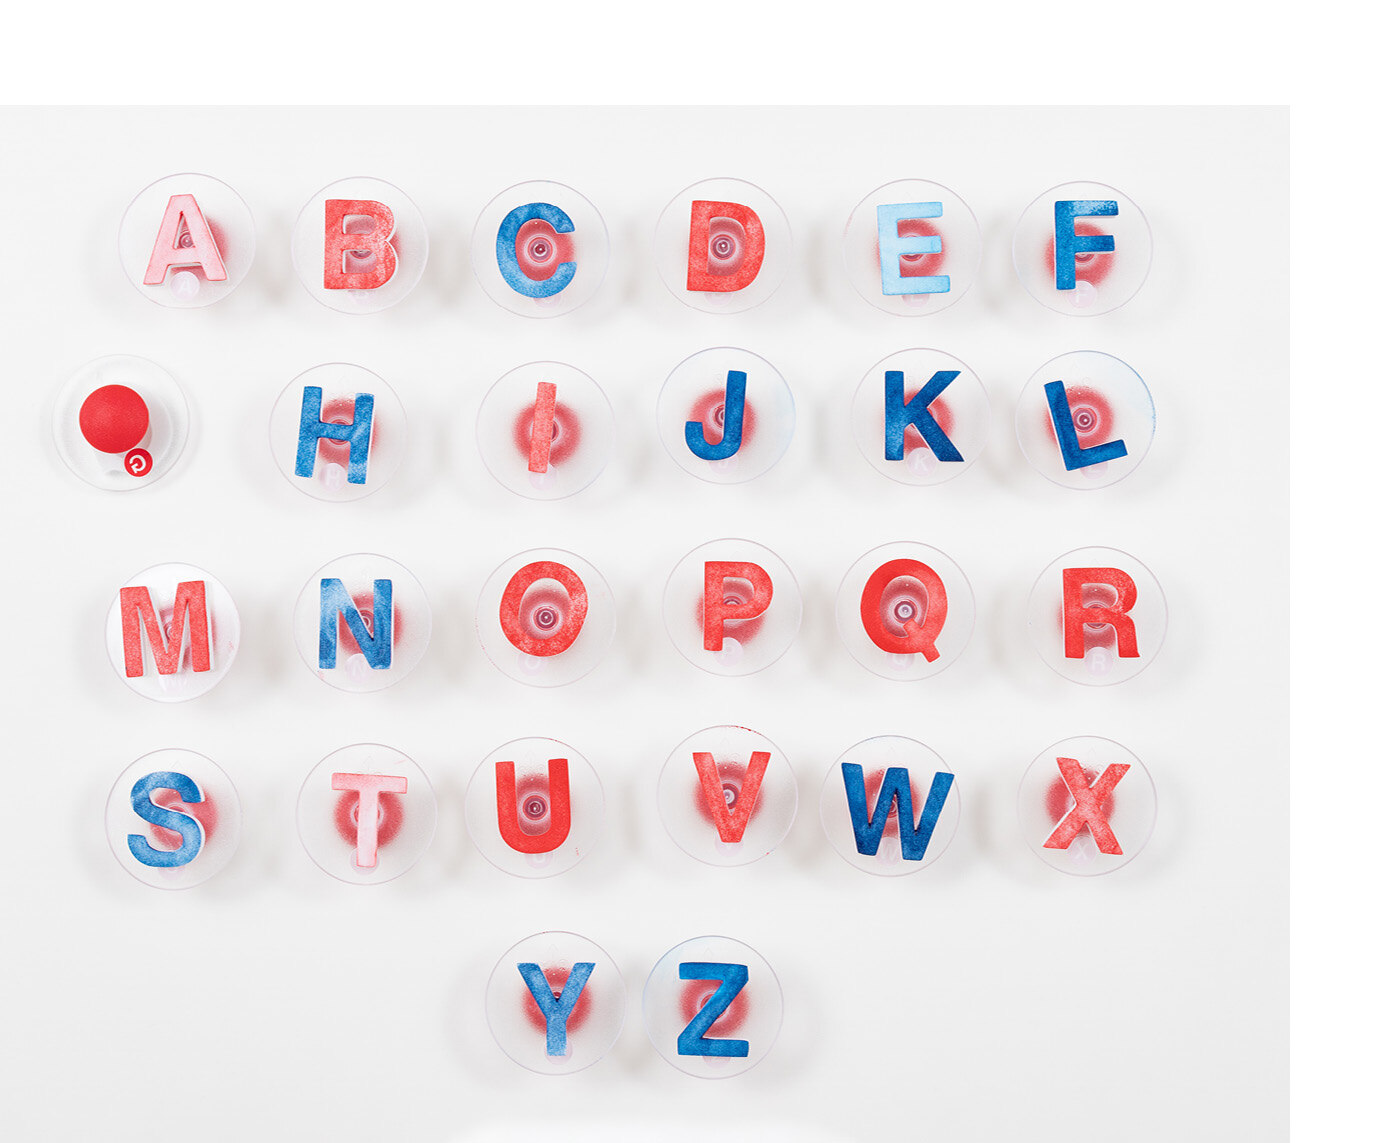 Sechsundzwanzig Stempel, die einzeln alle Buchstaben des deutschen Alphabets abbilden.